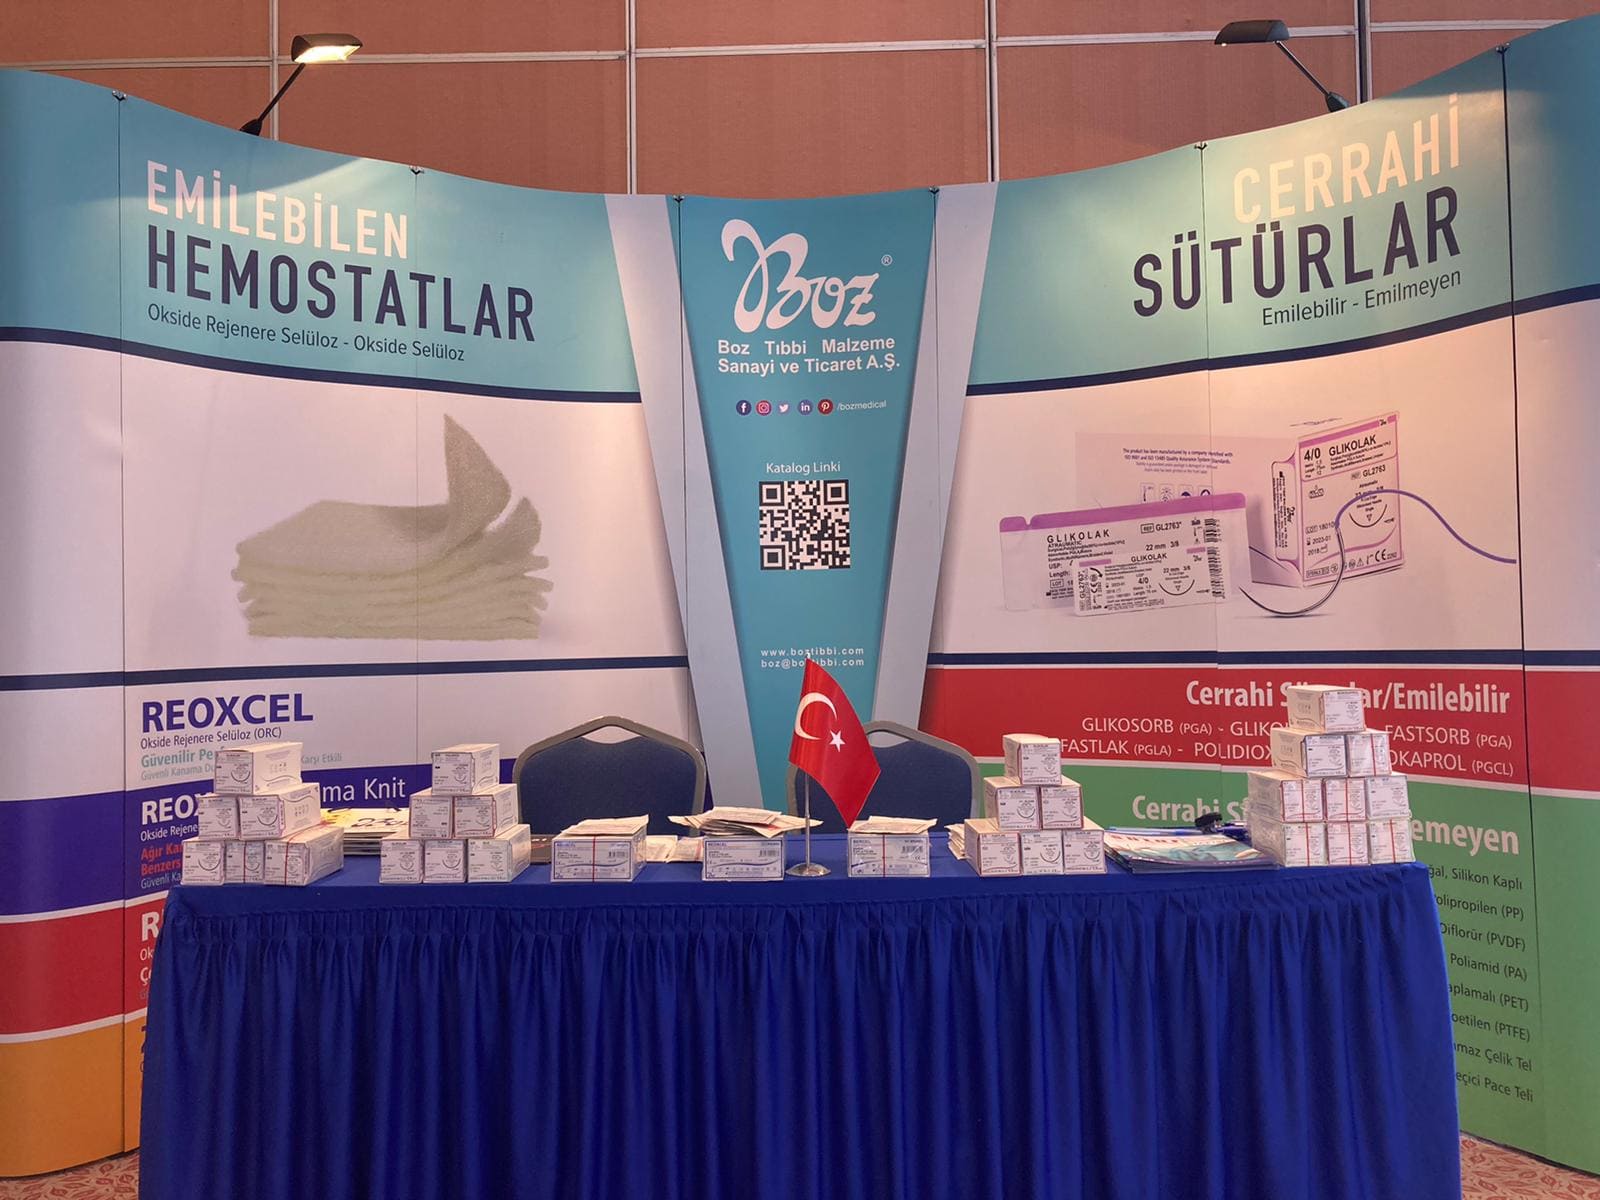 22. Ulusal Cerrahi Kongresi ve 17. Ulusal Cerrahi Hemşireliği Kongresi Gerçekleşti - Antalya, Mart 2022 - Boz Tıbbi Malzeme